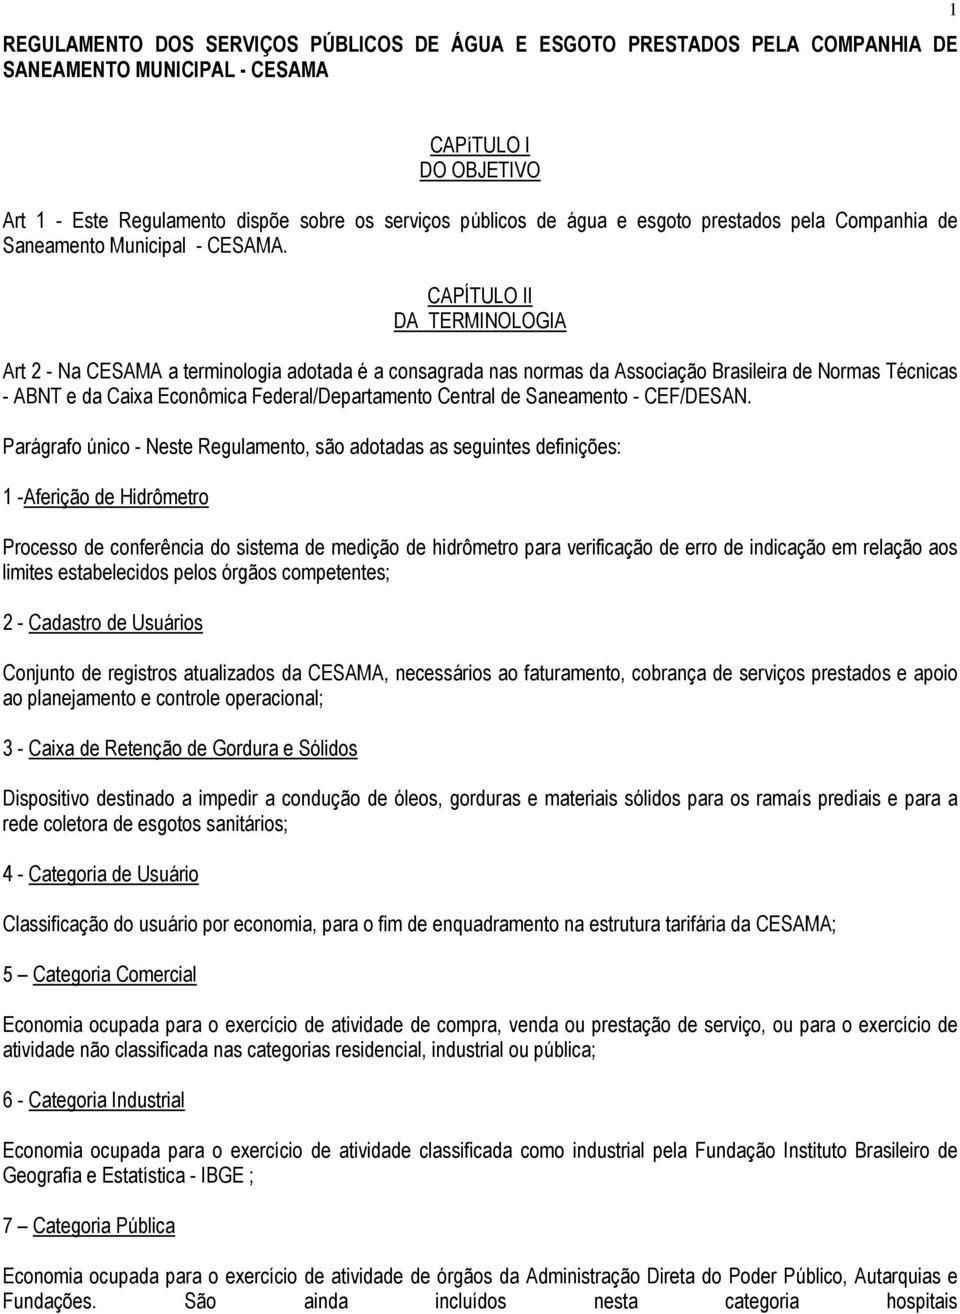 CAPÍTULO II DA TERMINOLOGIA Art 2 - Na CESAMA a terminologia adotada é a consagrada nas normas da Associação Brasileira de Normas Técnicas - ABNT e da Caixa Econômica Federal/Departamento Central de